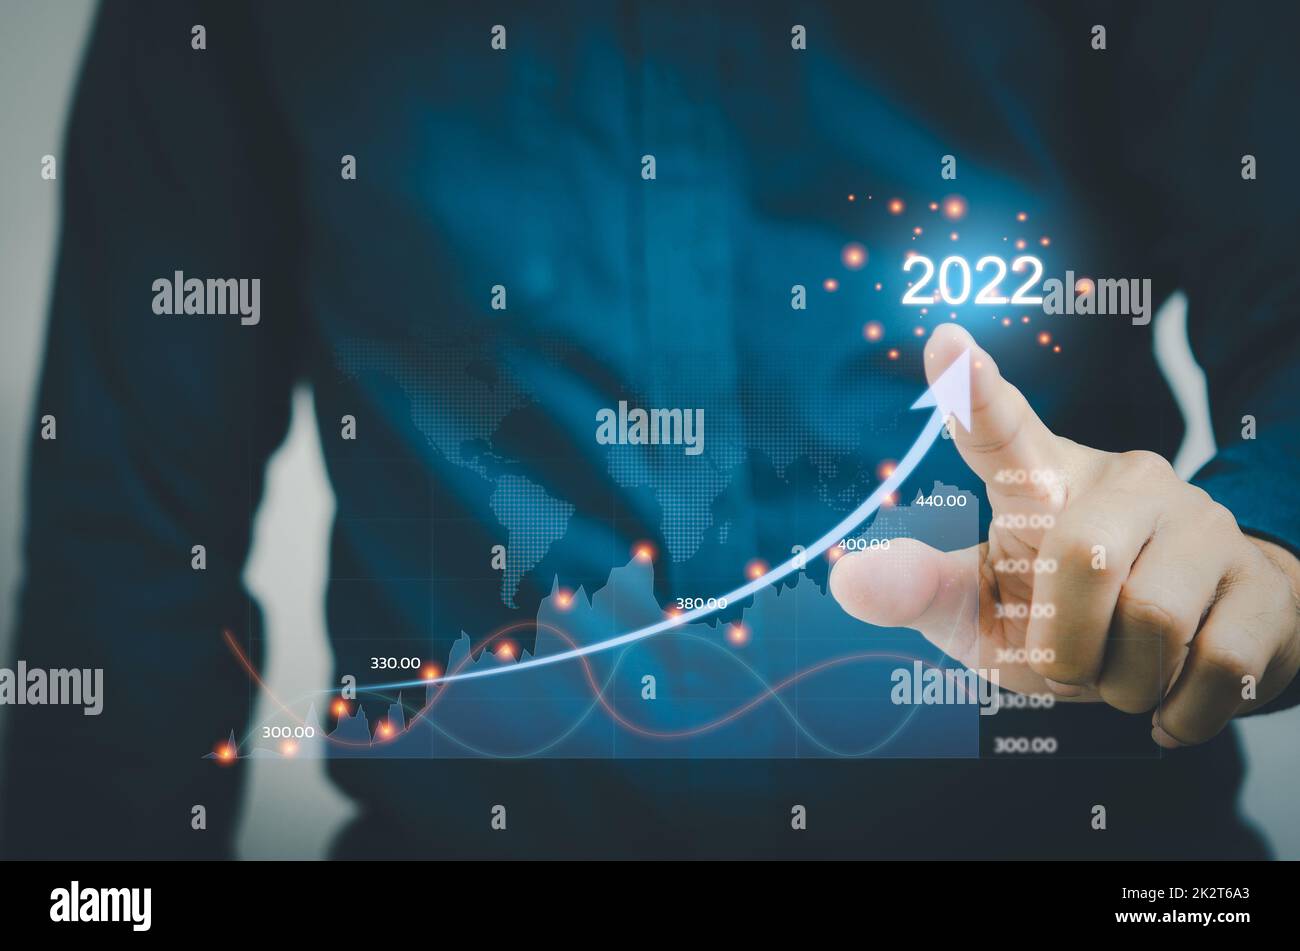 Geschäftsmann berührt Pfeile und Diagramme auf einem virtuellen Bildschirm. Financial Business Planning 2022 Marketing Goals Konzept. Stockfoto